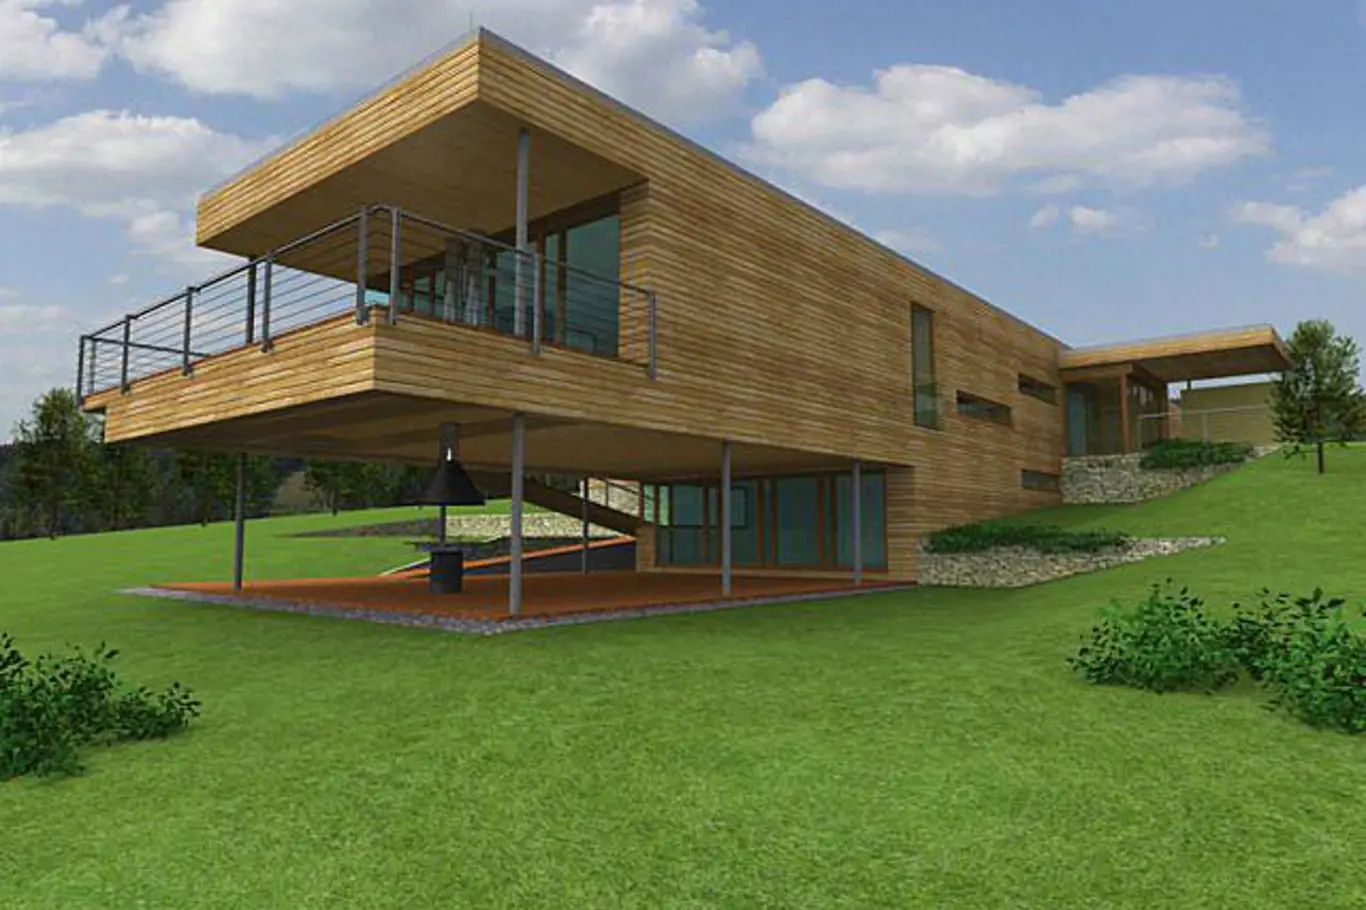 Ojedinělý projektem dřevěné reprezentativní residenční vily v pasivním standardu, kterou navrhl Ing. arch. Josef Smola. Tento typ stavby vyžaduje svažitý pozemek.